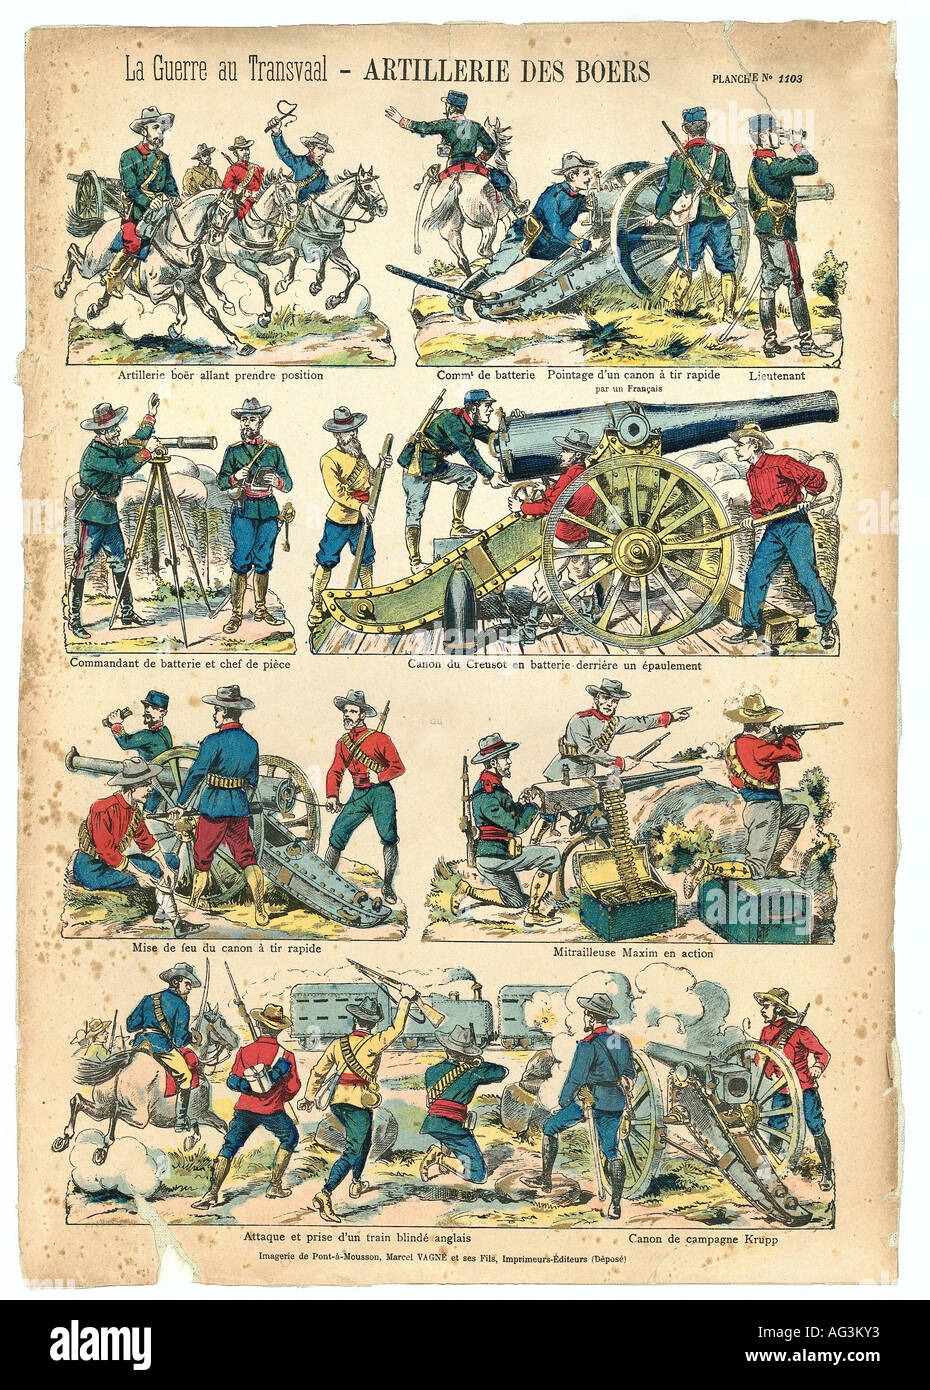 events, Second Boer War 1899 - 1902, Boer Artillery, print, 1900, series 'La Guerre de Transvaal', published by Marcel Vance et ses fils, Pont-a-Mousson, France, , Stock Photo